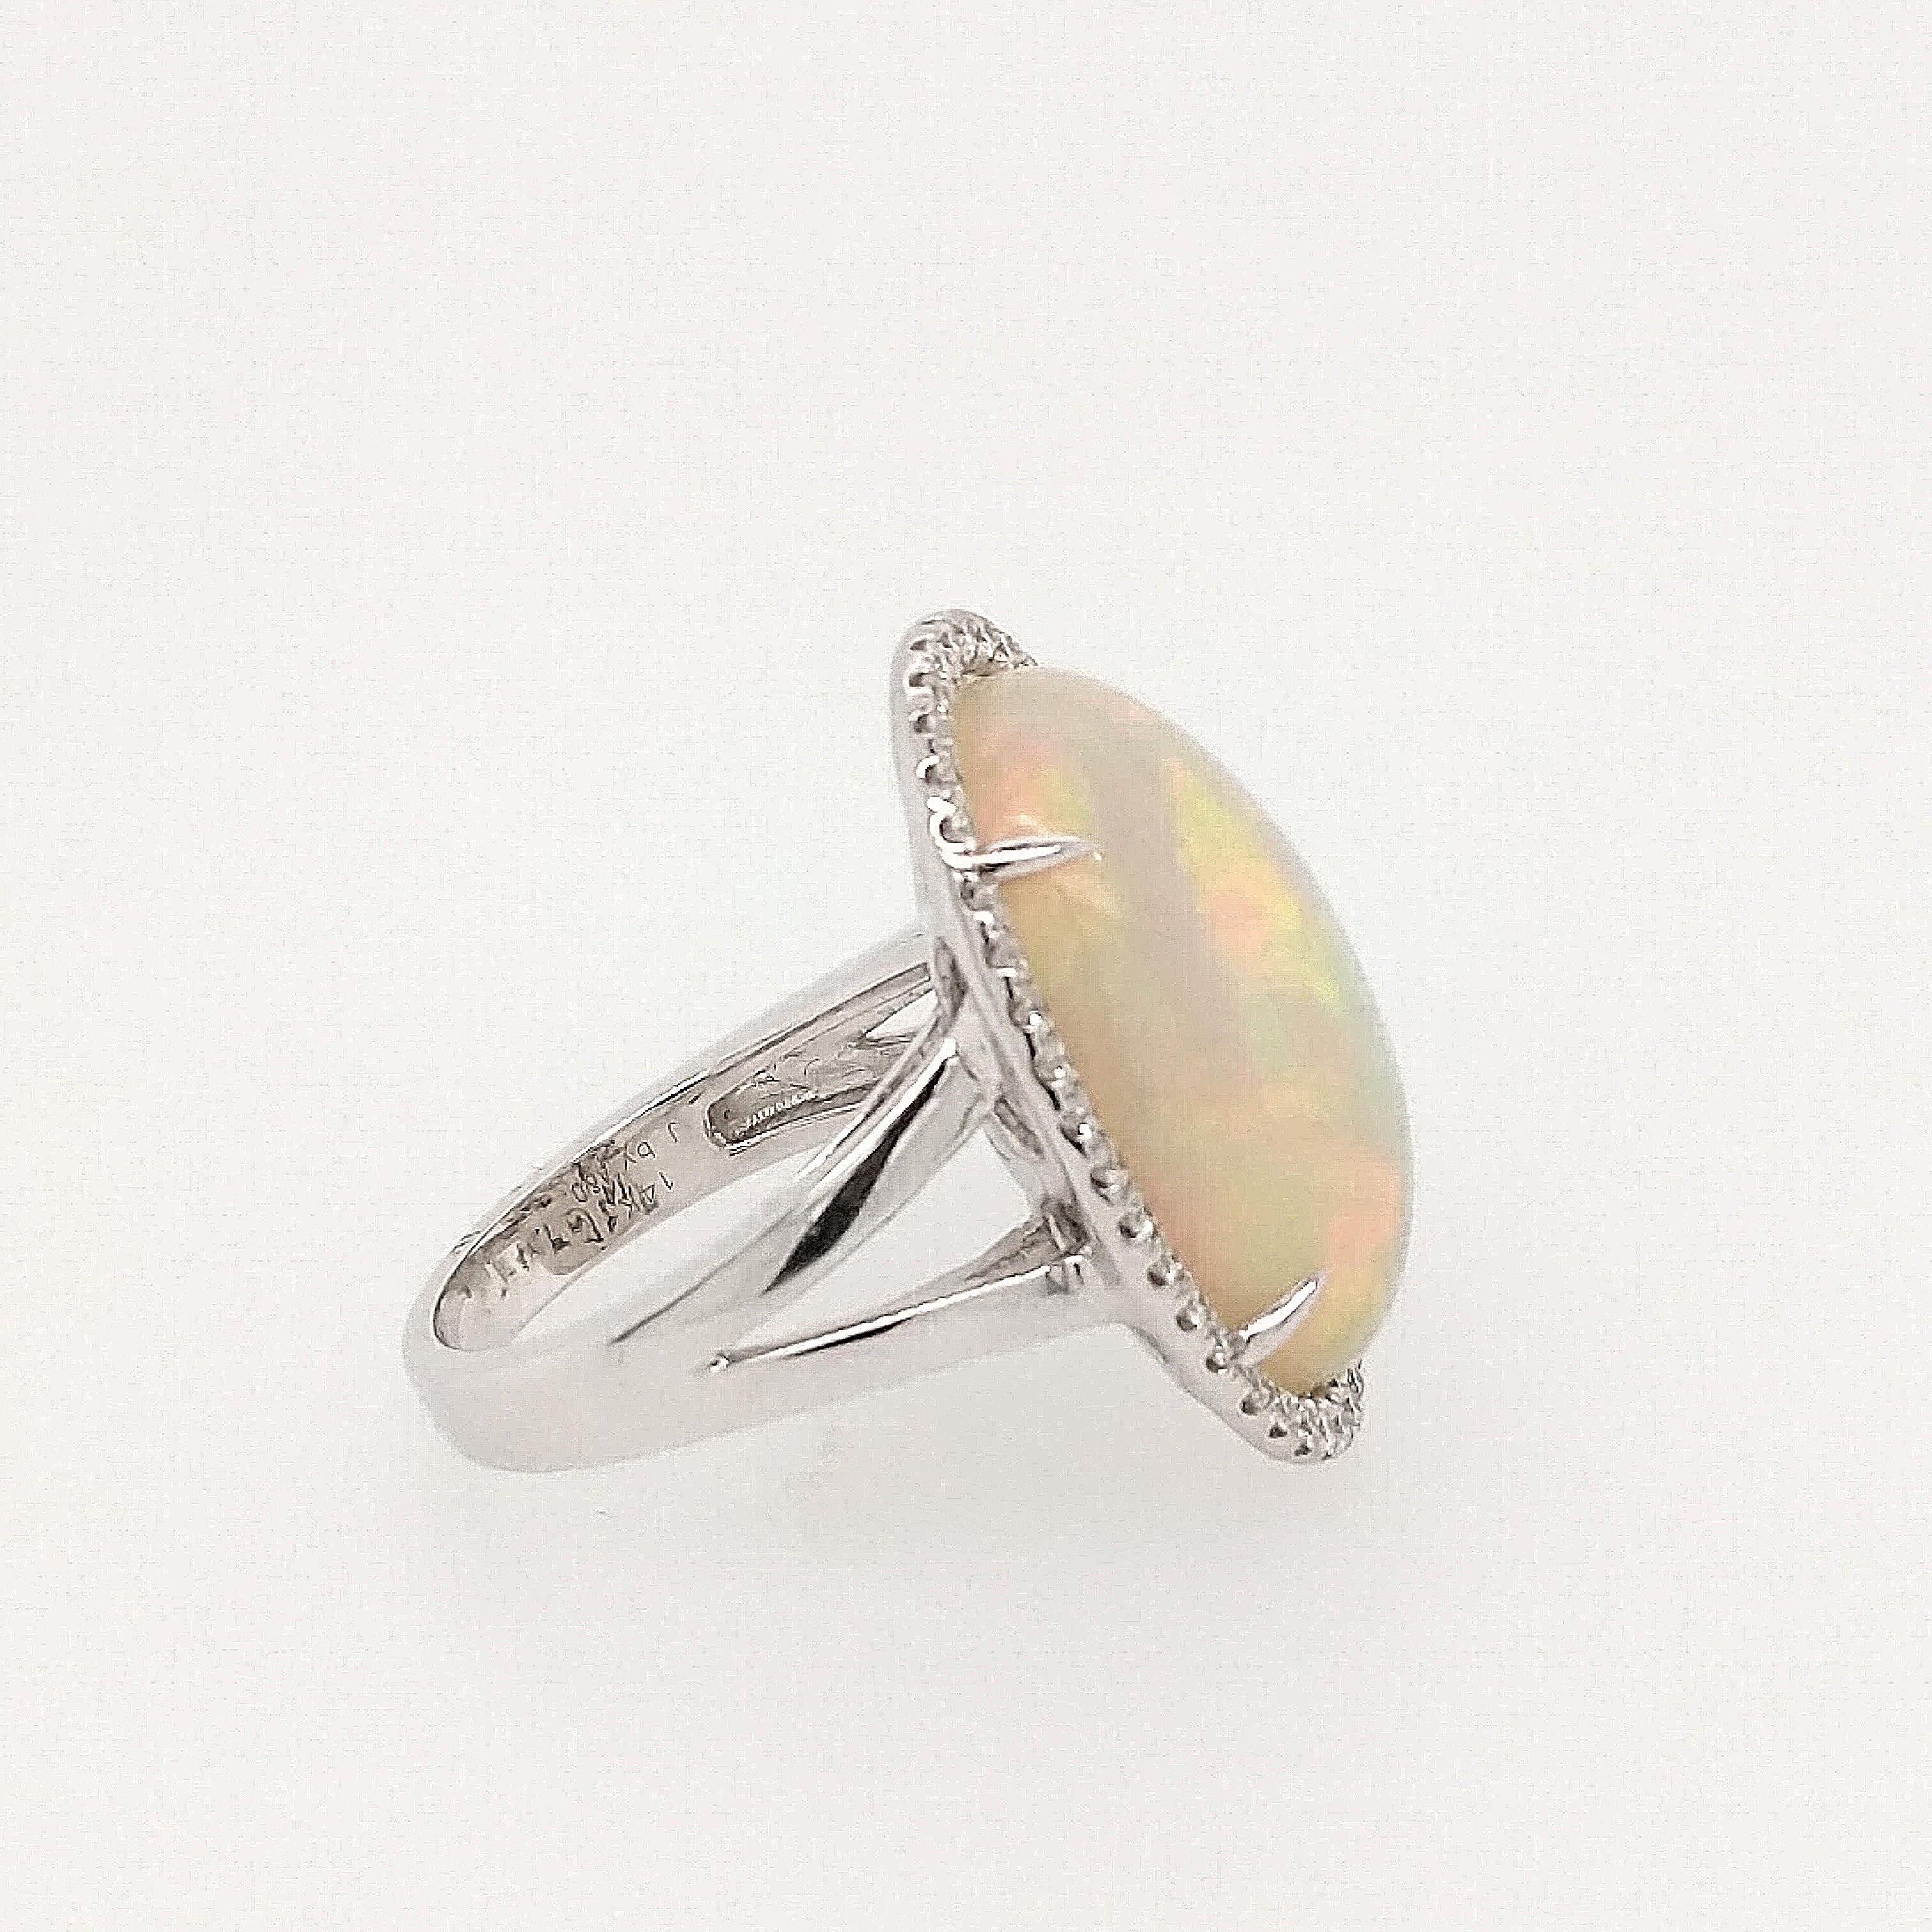 Dieser Opal und Diamant Ring ist in 14k Weißgold gefertigt und verfügt über (1) Cabochon Opal mit einem Gewicht von 10,77ct mit dominierenden Farben von grün, orange, rot, blau und weiß. Der Mittelstein ist umgeben von (42) runden Brillanten mit